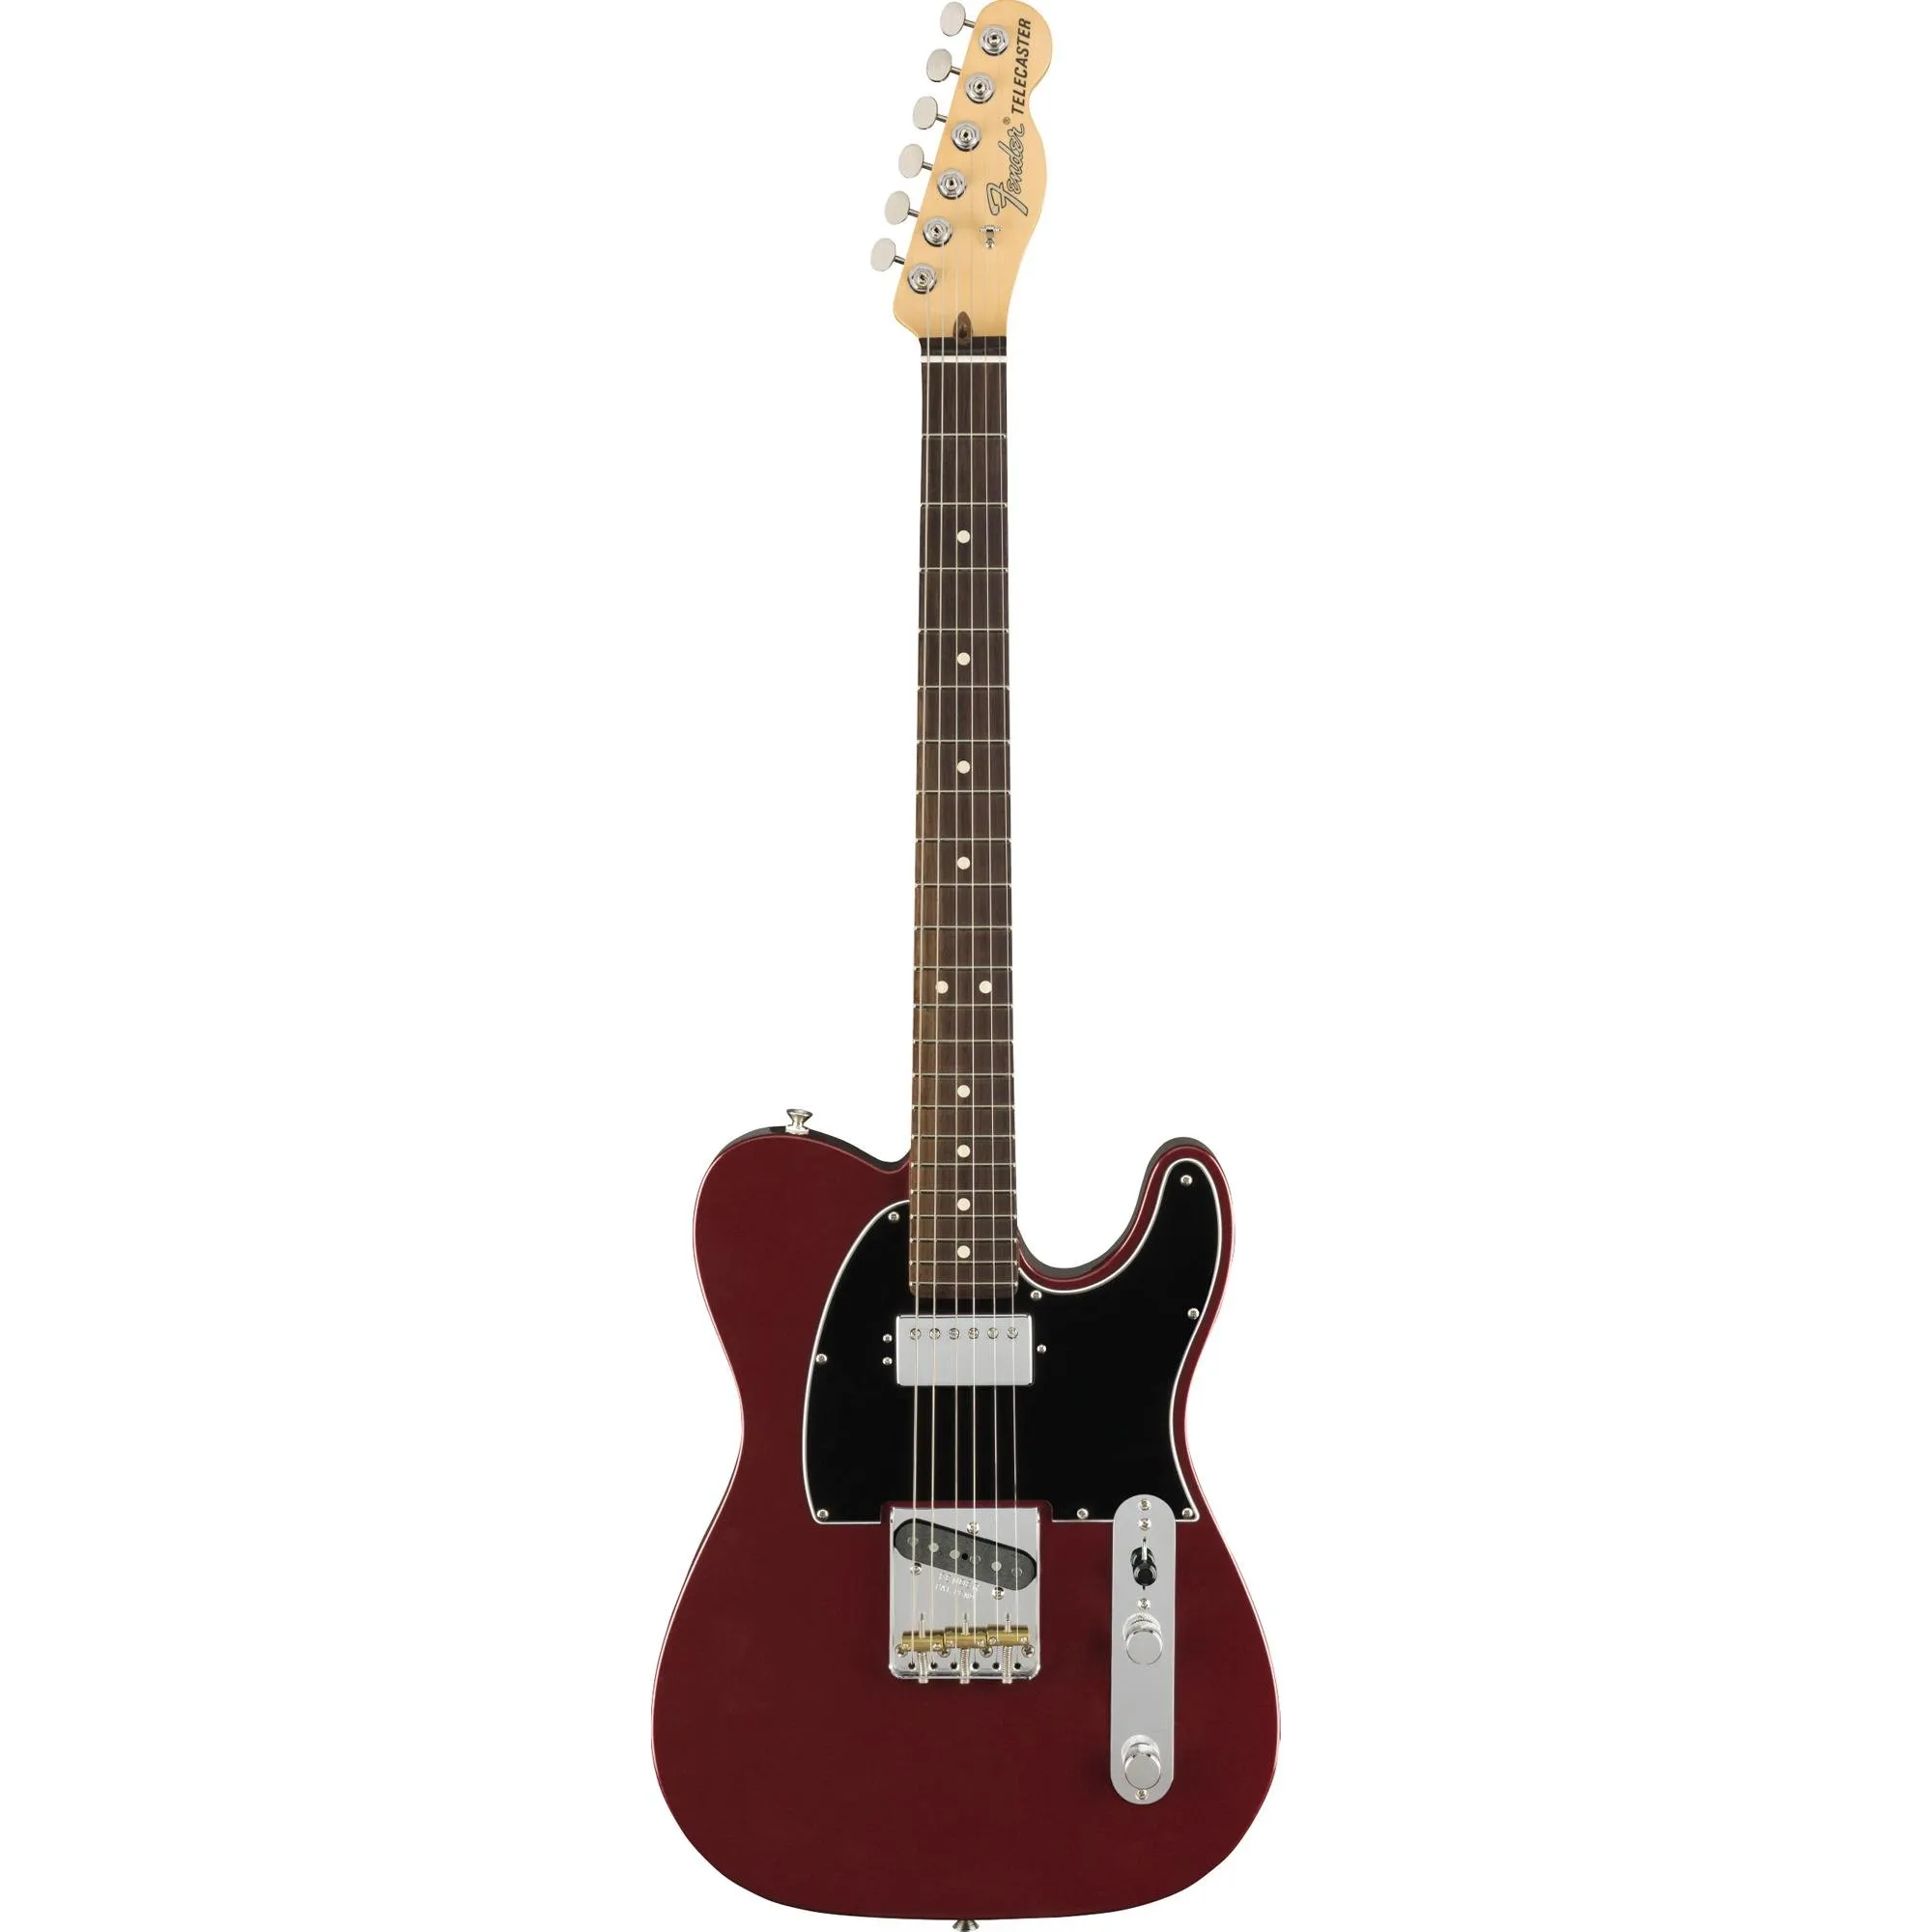 Guitarra Telecaster Fender American Performer Aubergine por 12.795,00 à vista no boleto/pix ou parcele em até 12x sem juros. Compre na loja Mundomax!